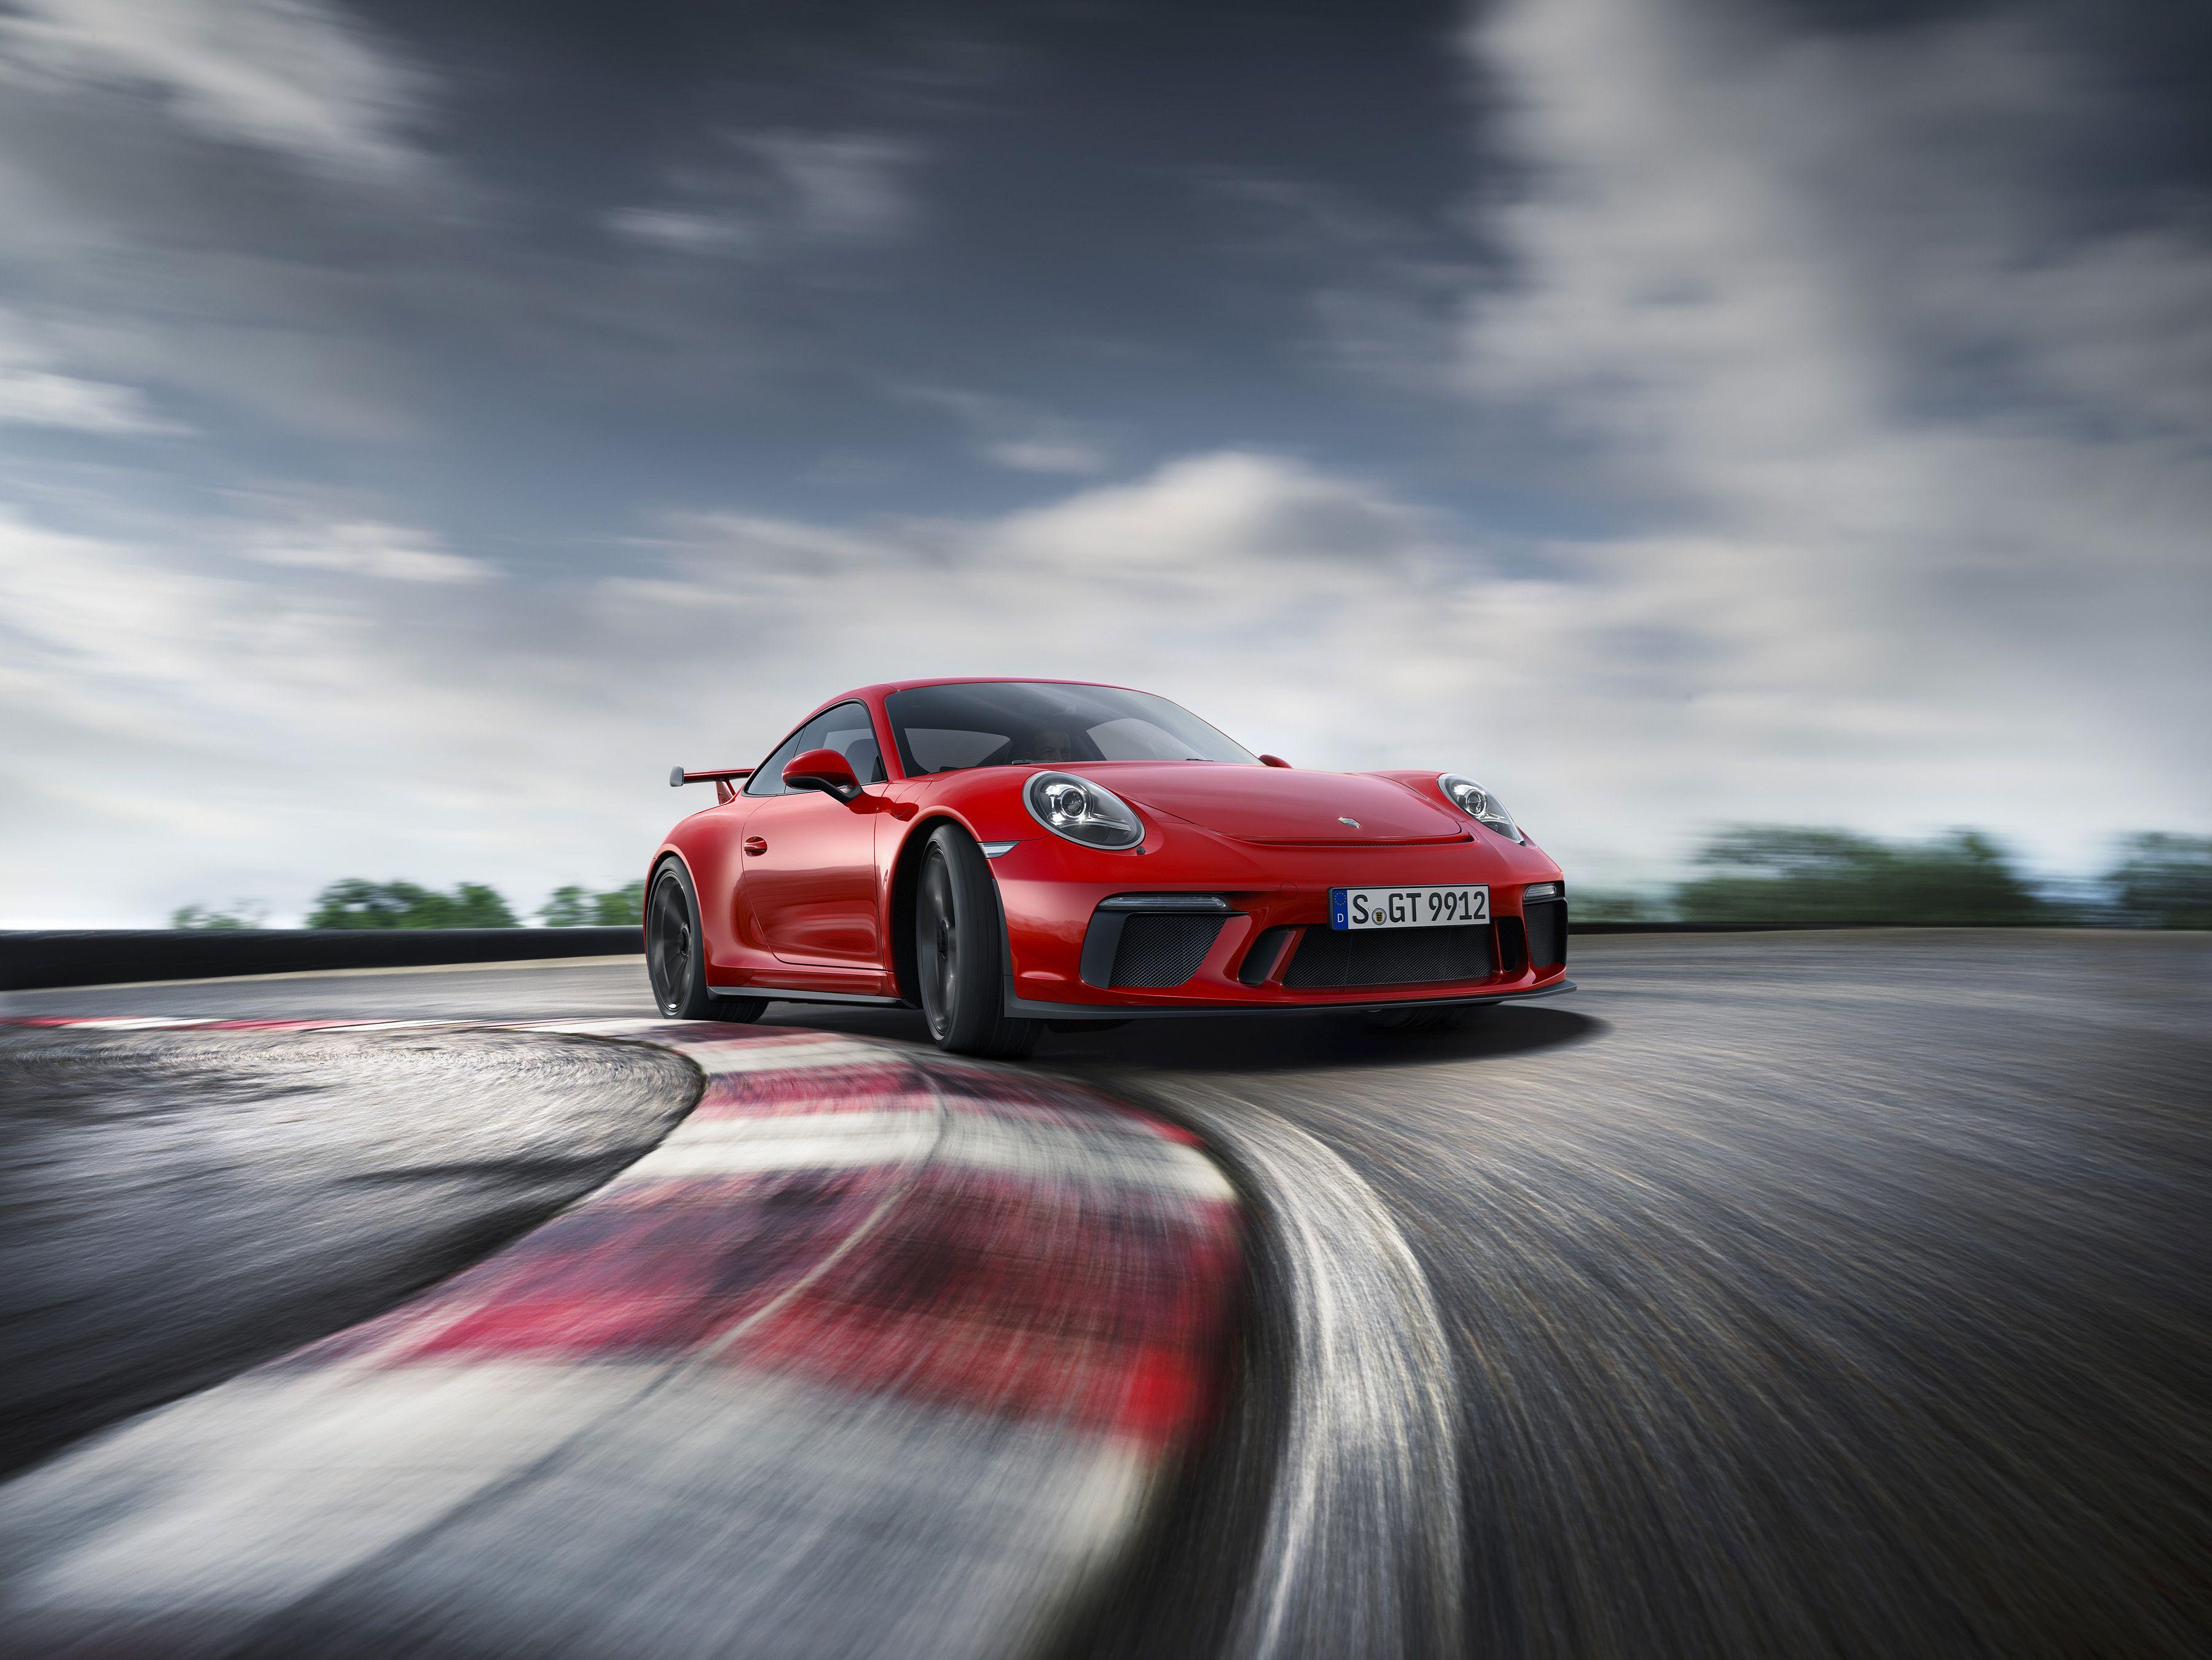 Porsche 911 Gtr Wallpapers Top Free Porsche 911 Gtr Backgrounds Wallpaperaccess